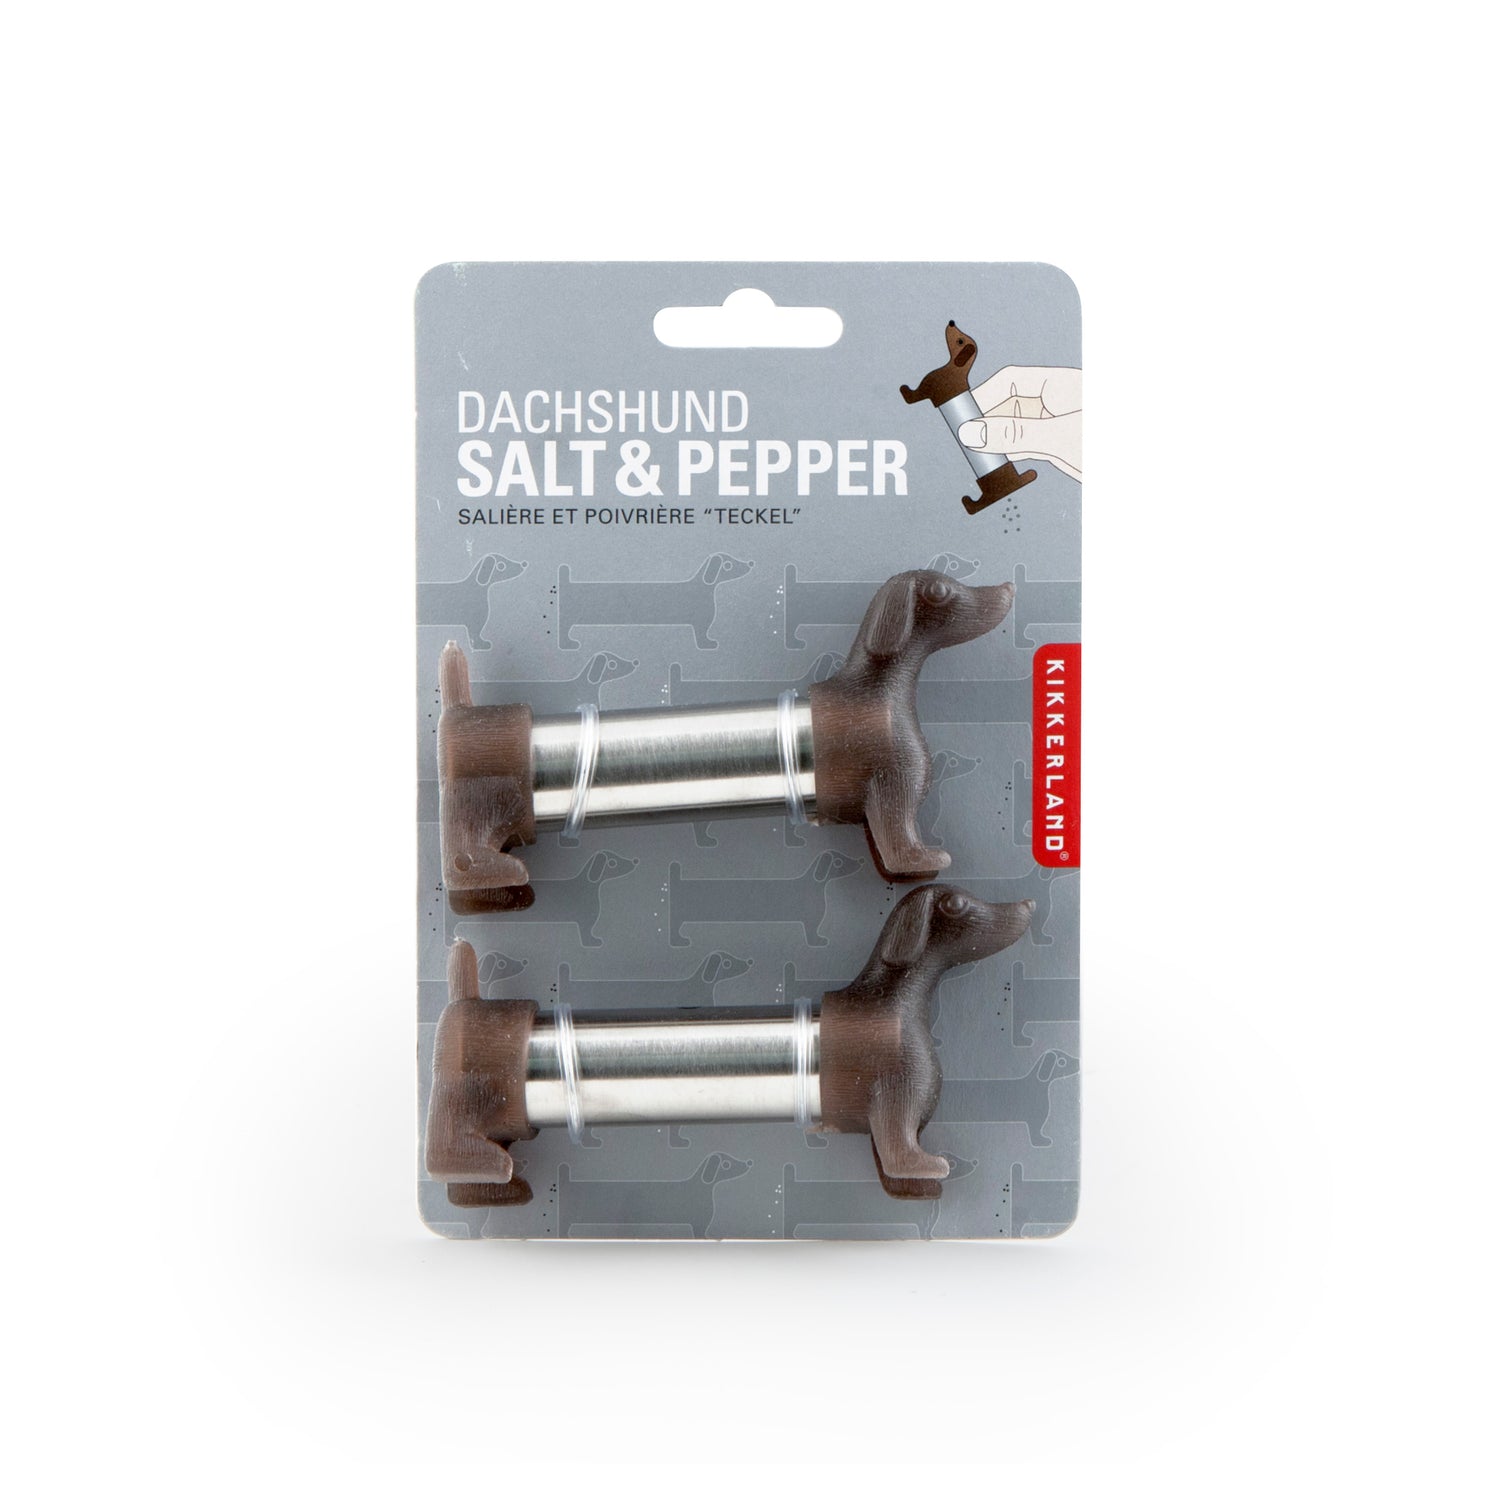 Dachshund Salt & Pepper Shakers